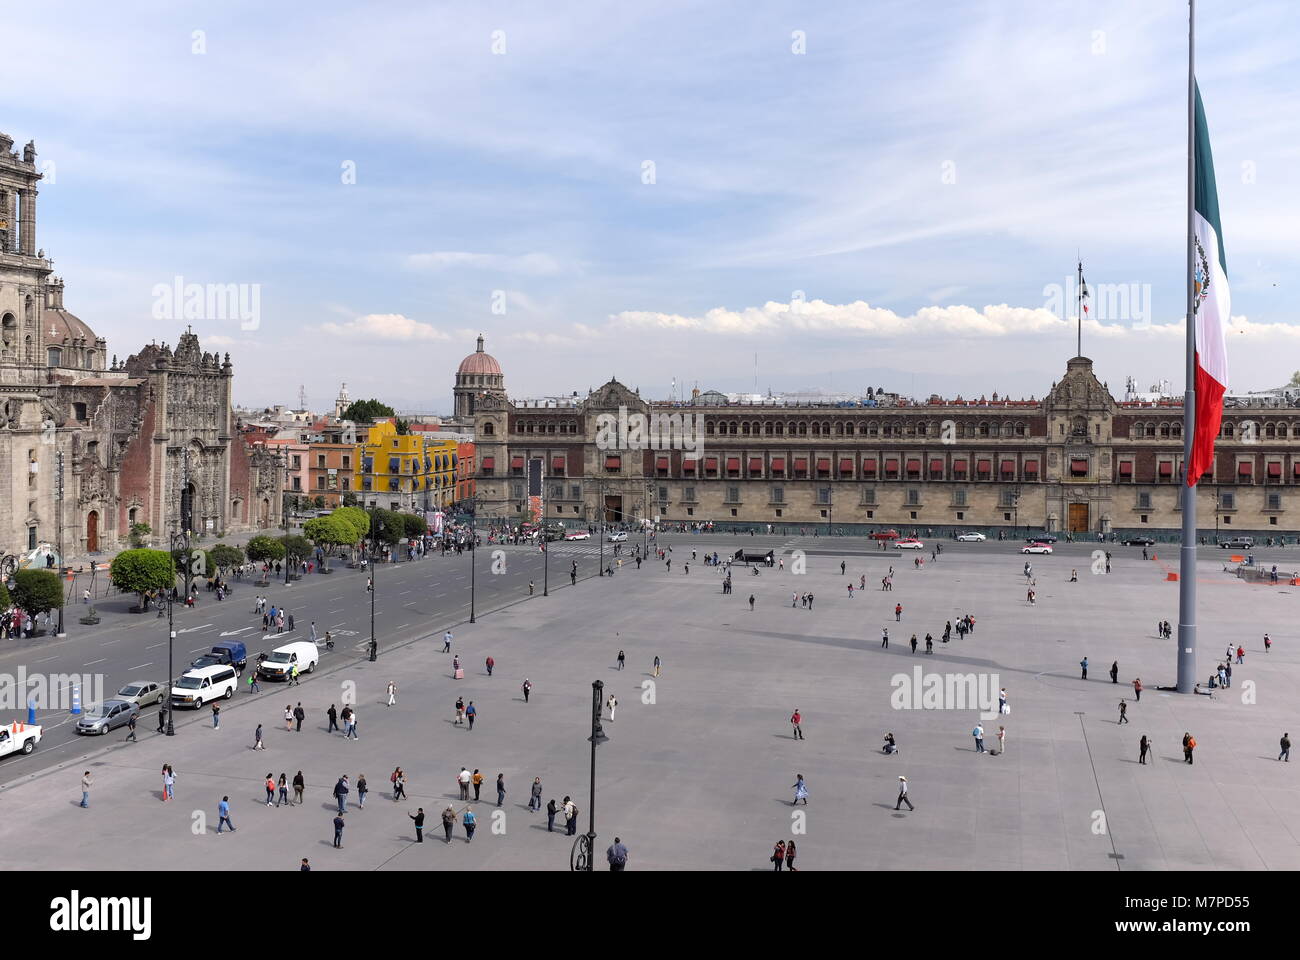 La bandiera nazionale del Messico onde sopra la Città del Messico zocalo, una delle piazze più grandi del mondo circondato da architettura storica. Foto Stock